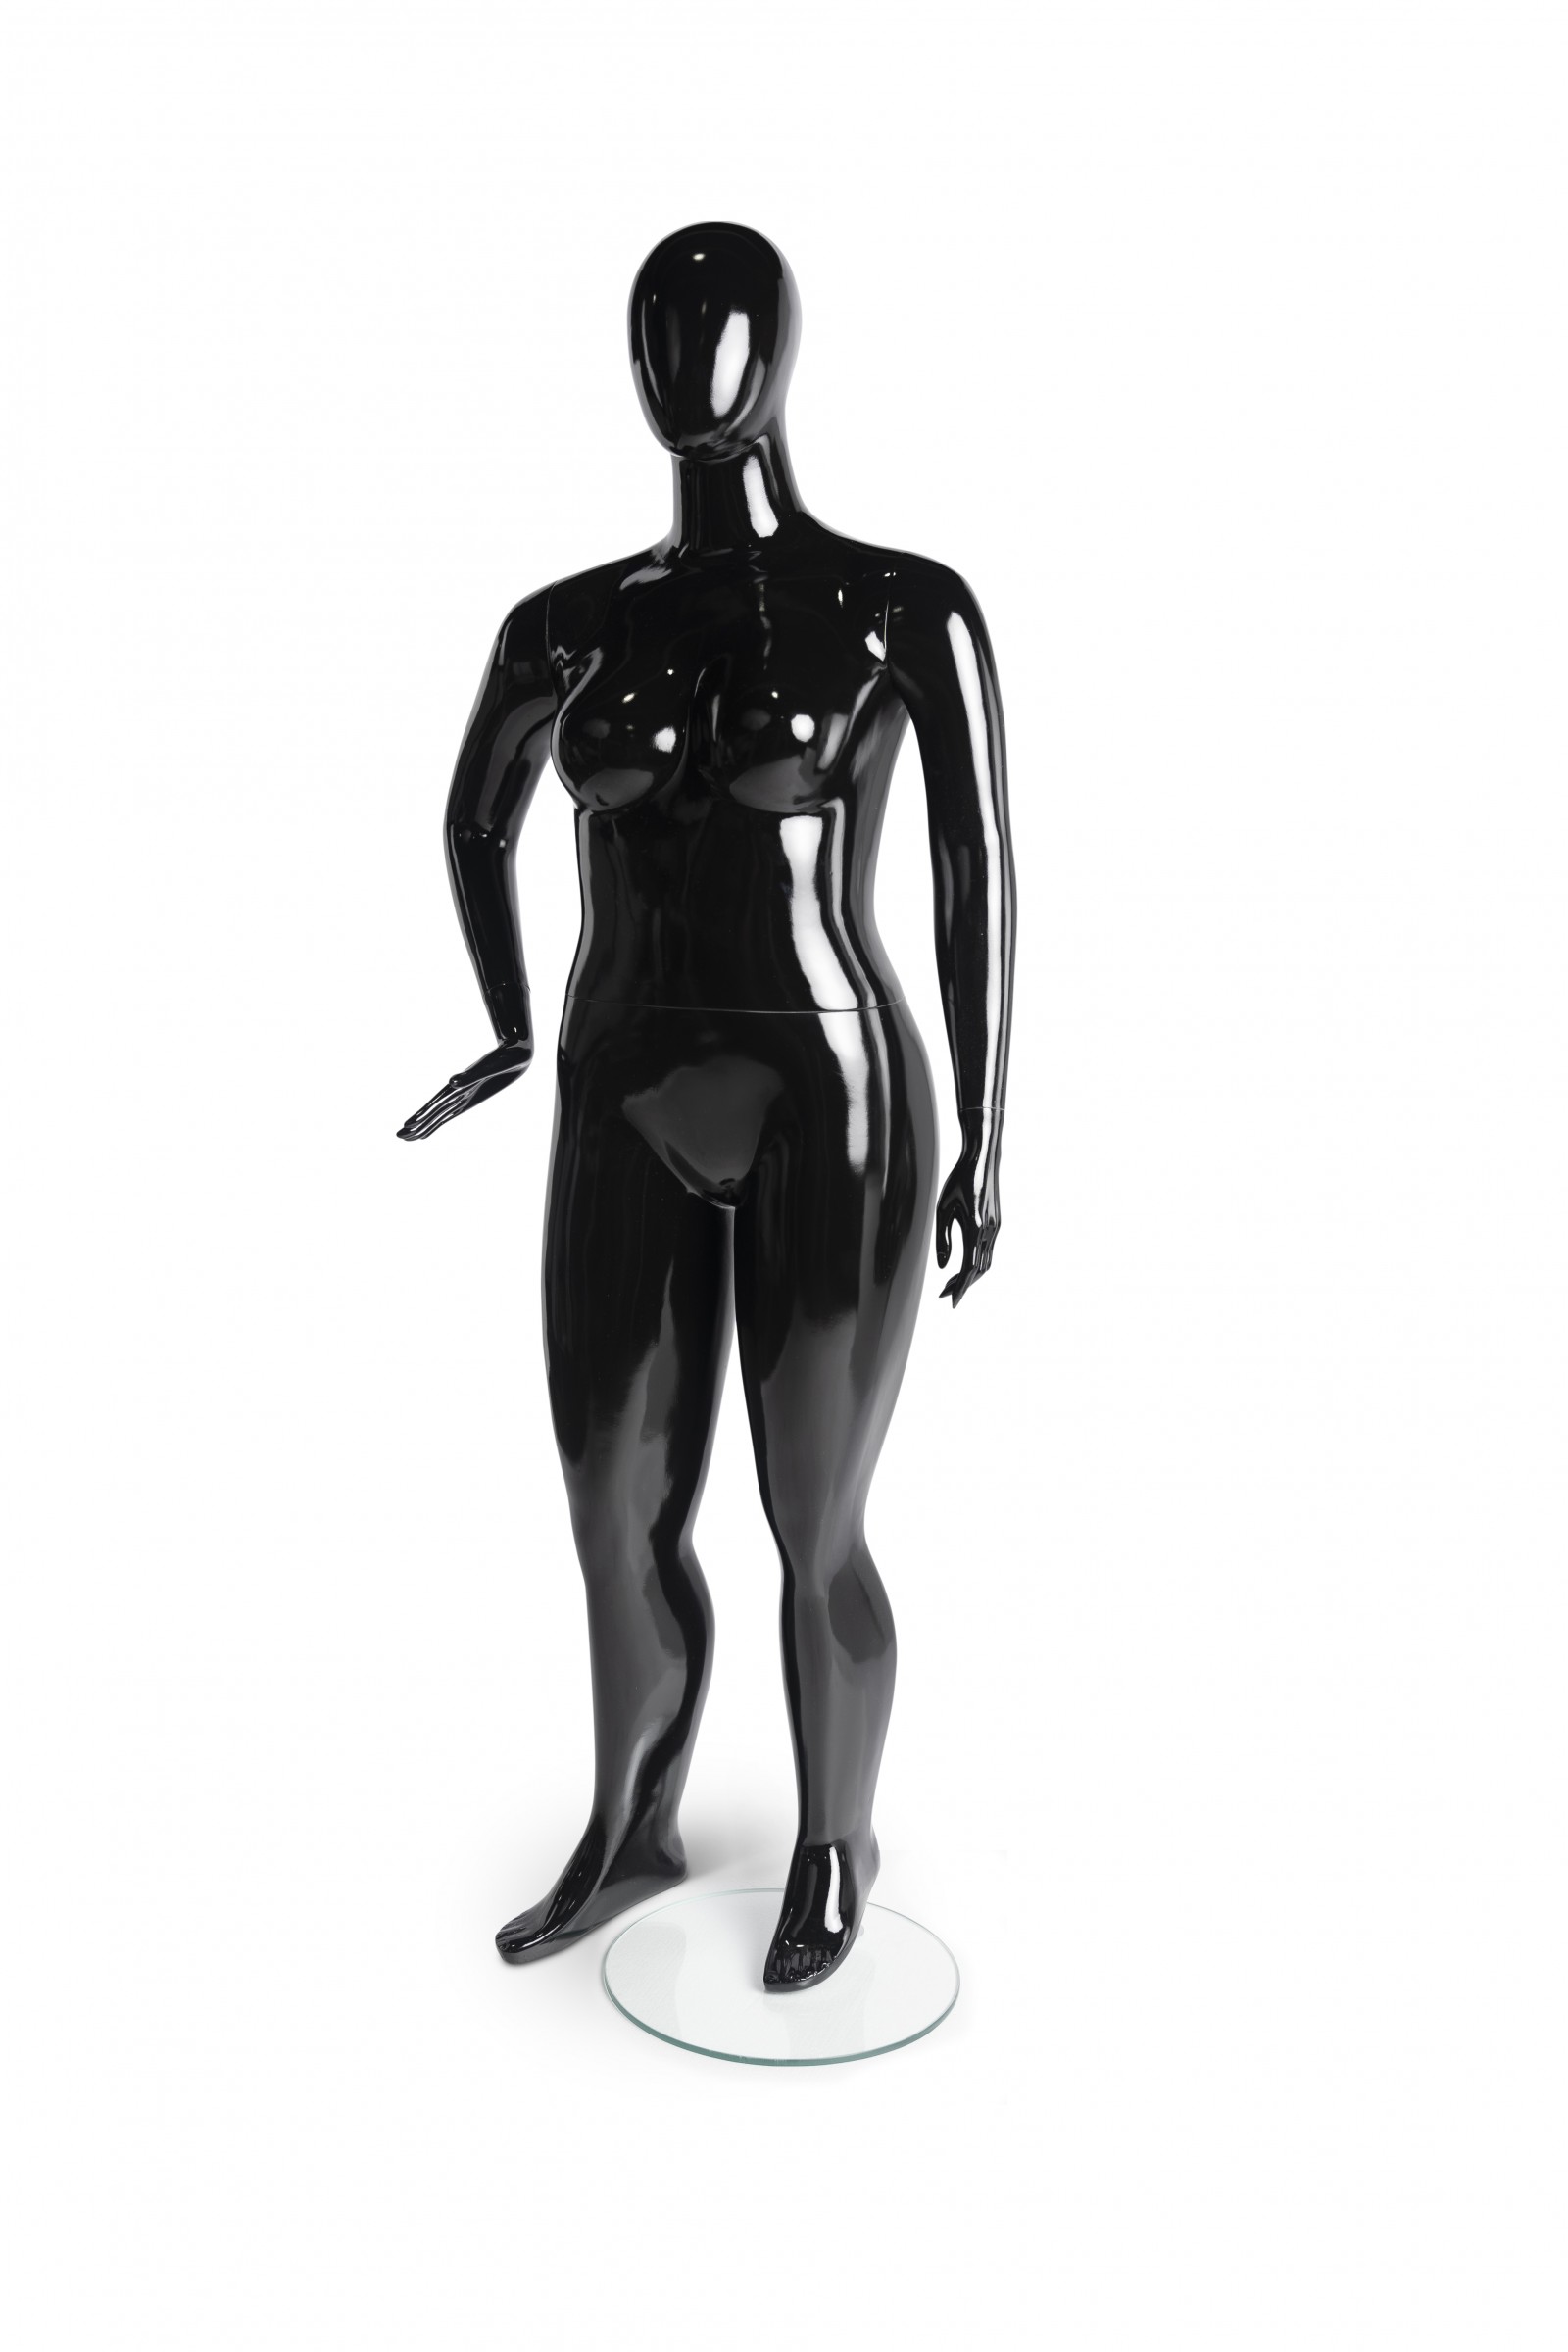 Black Plus Size Female Mannequin